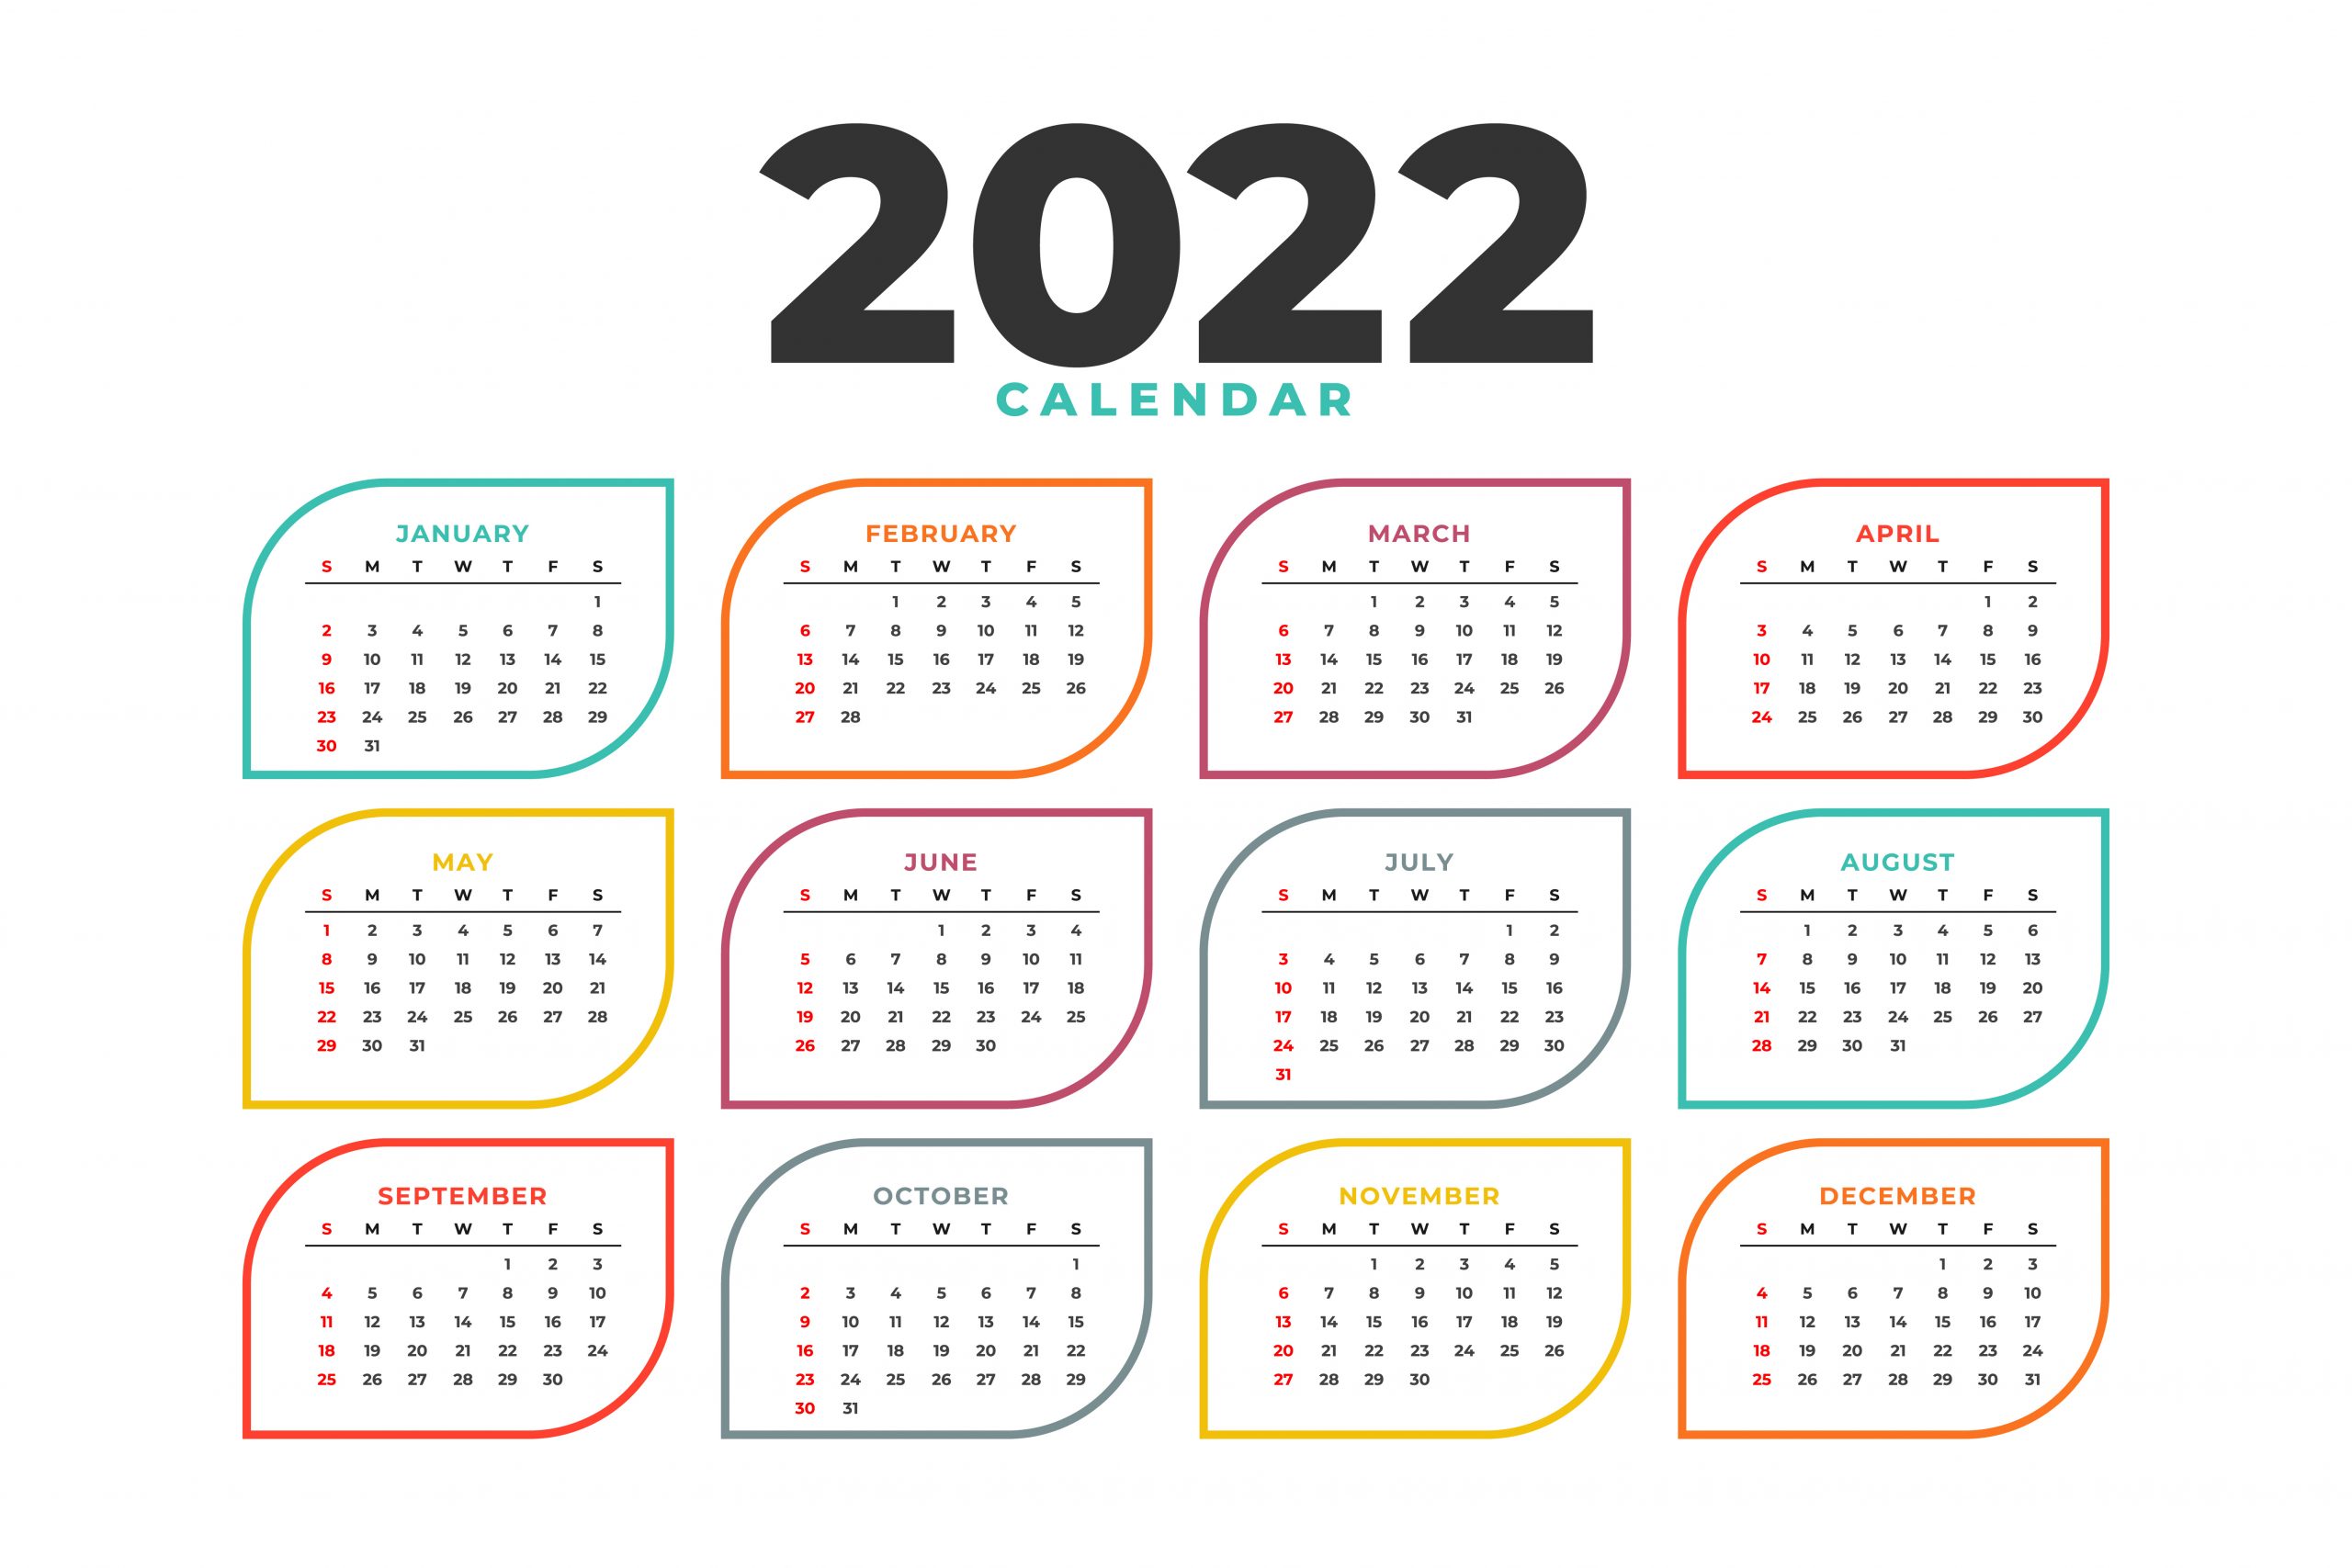 fechas importantes para el mundo veterinario en 2022